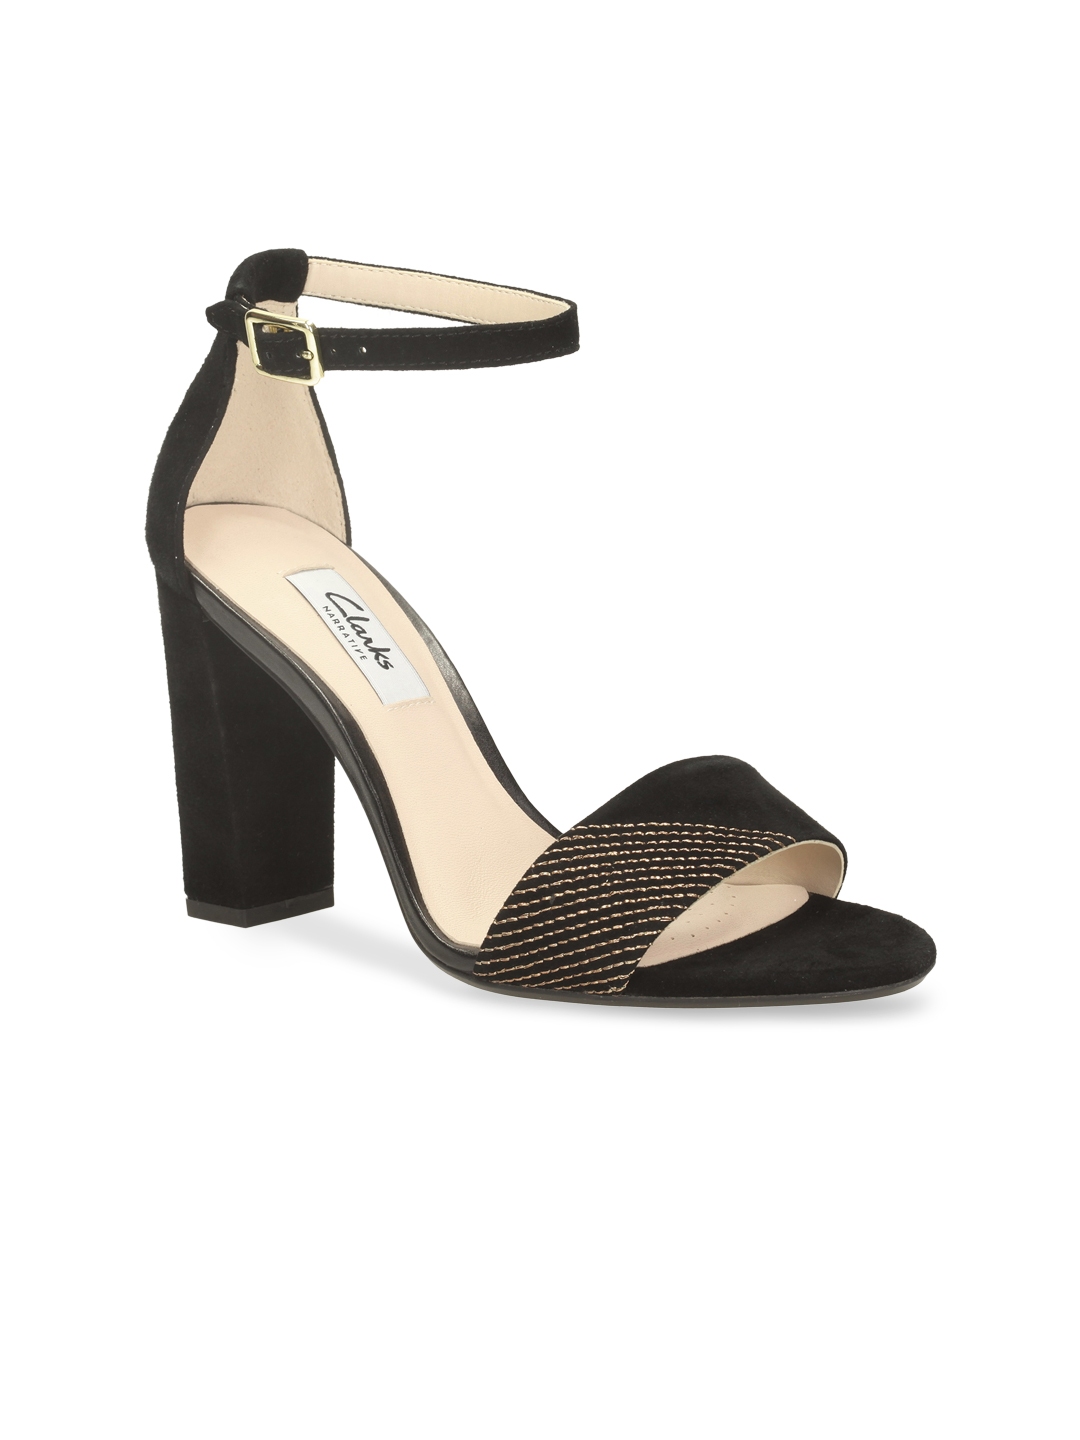 Buy Clarks Women Black Suede Heels - Heels for Women 1474421 | Myntra